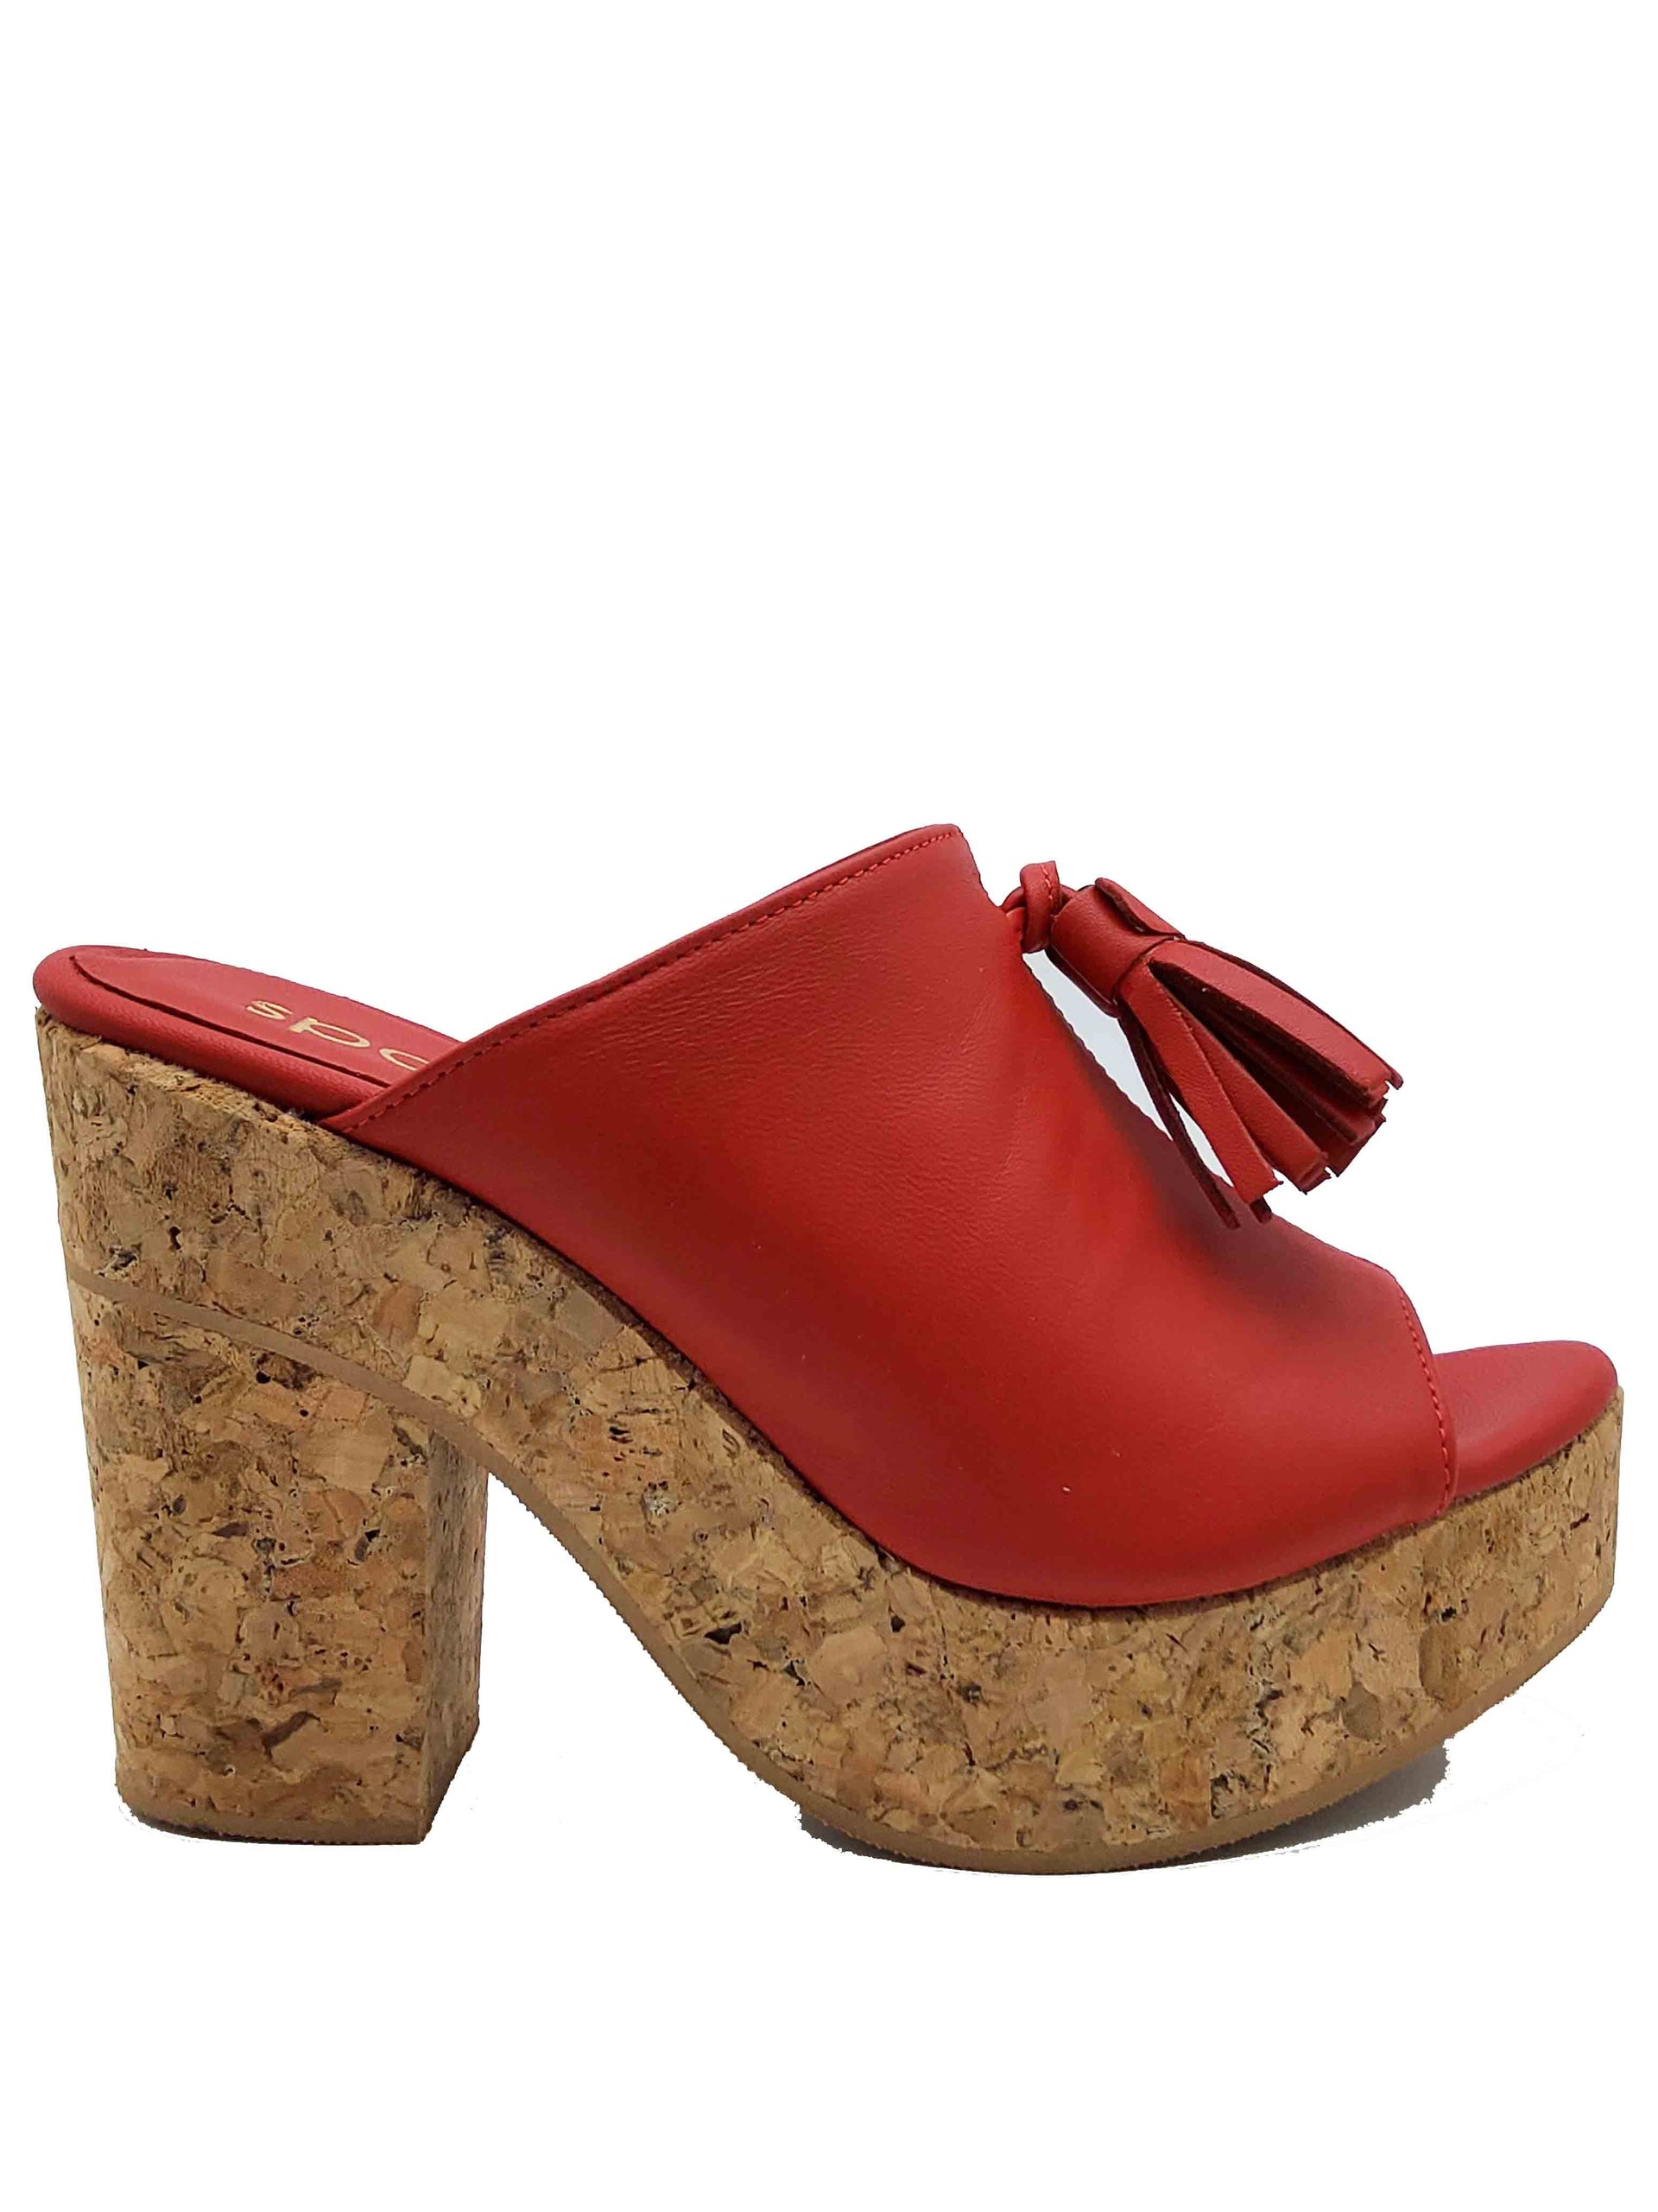 Chaussures pour femmes Sandales en cuir rouge avec nœuds et semelle compensée haute en liège